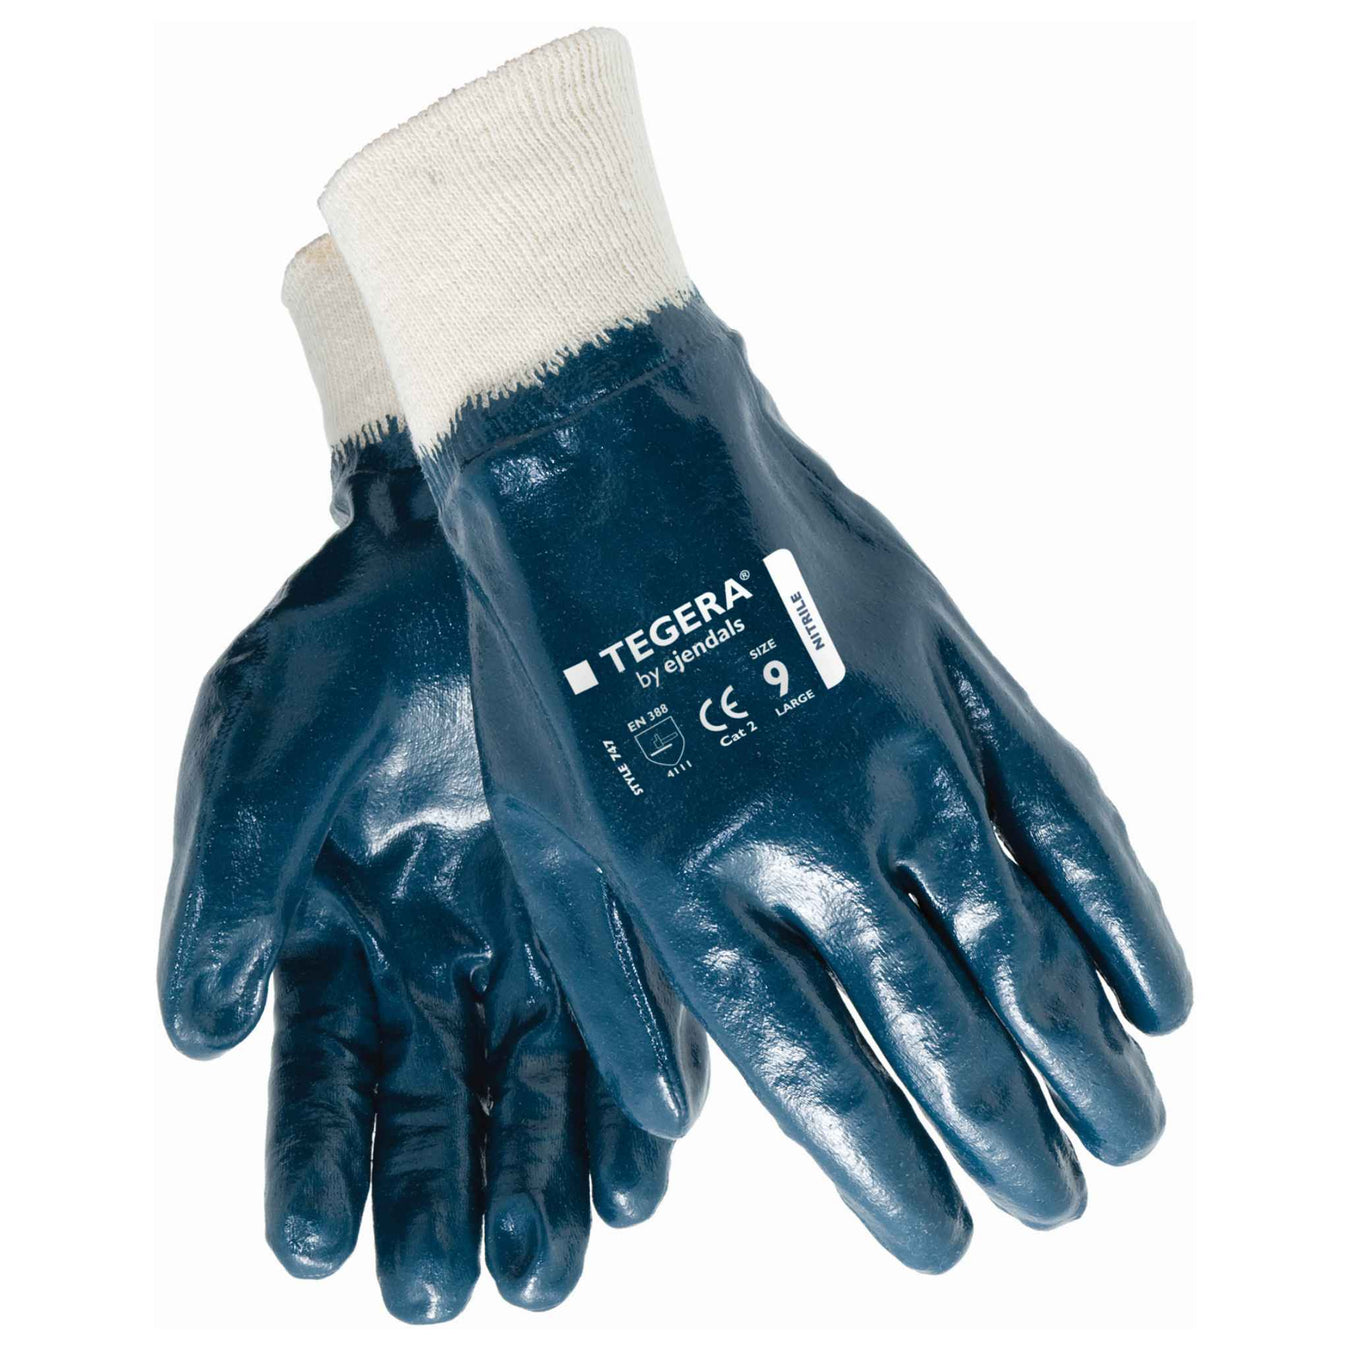 Tegra gloves